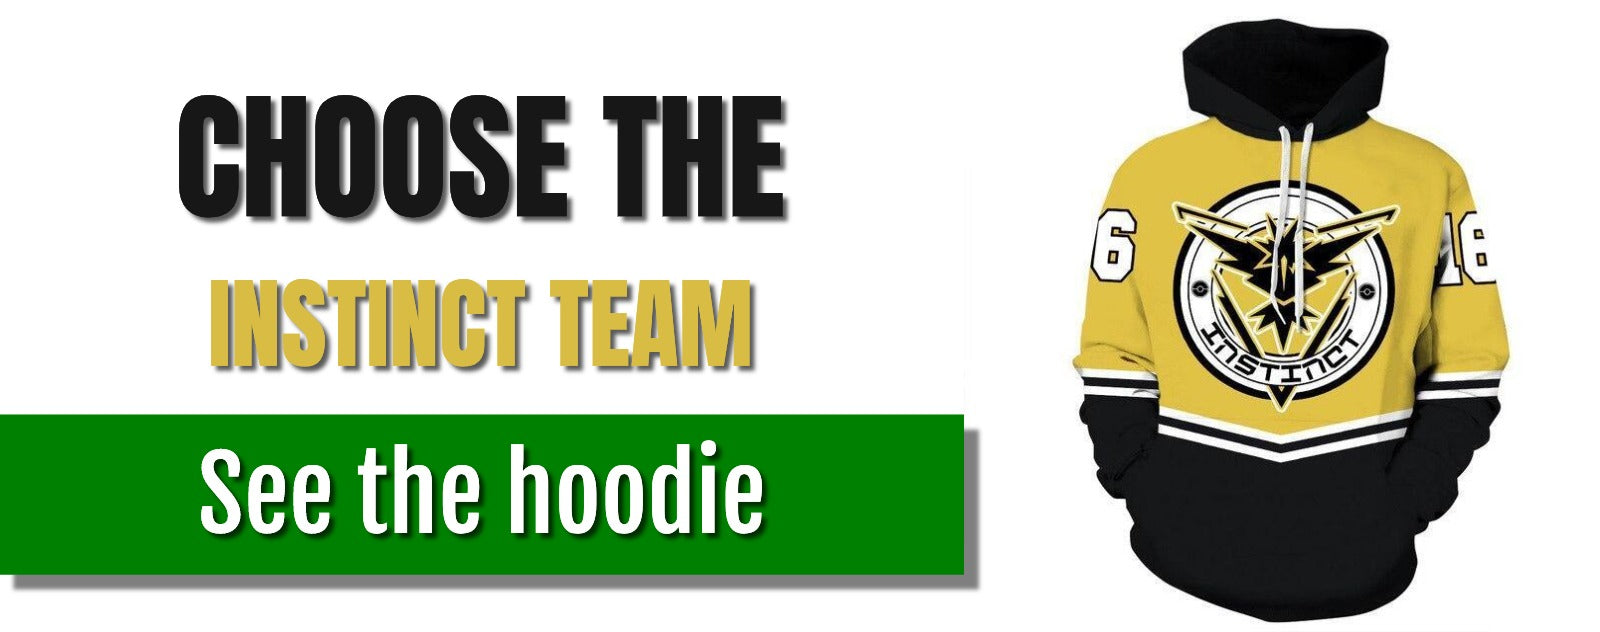 instinct-team-hoodie